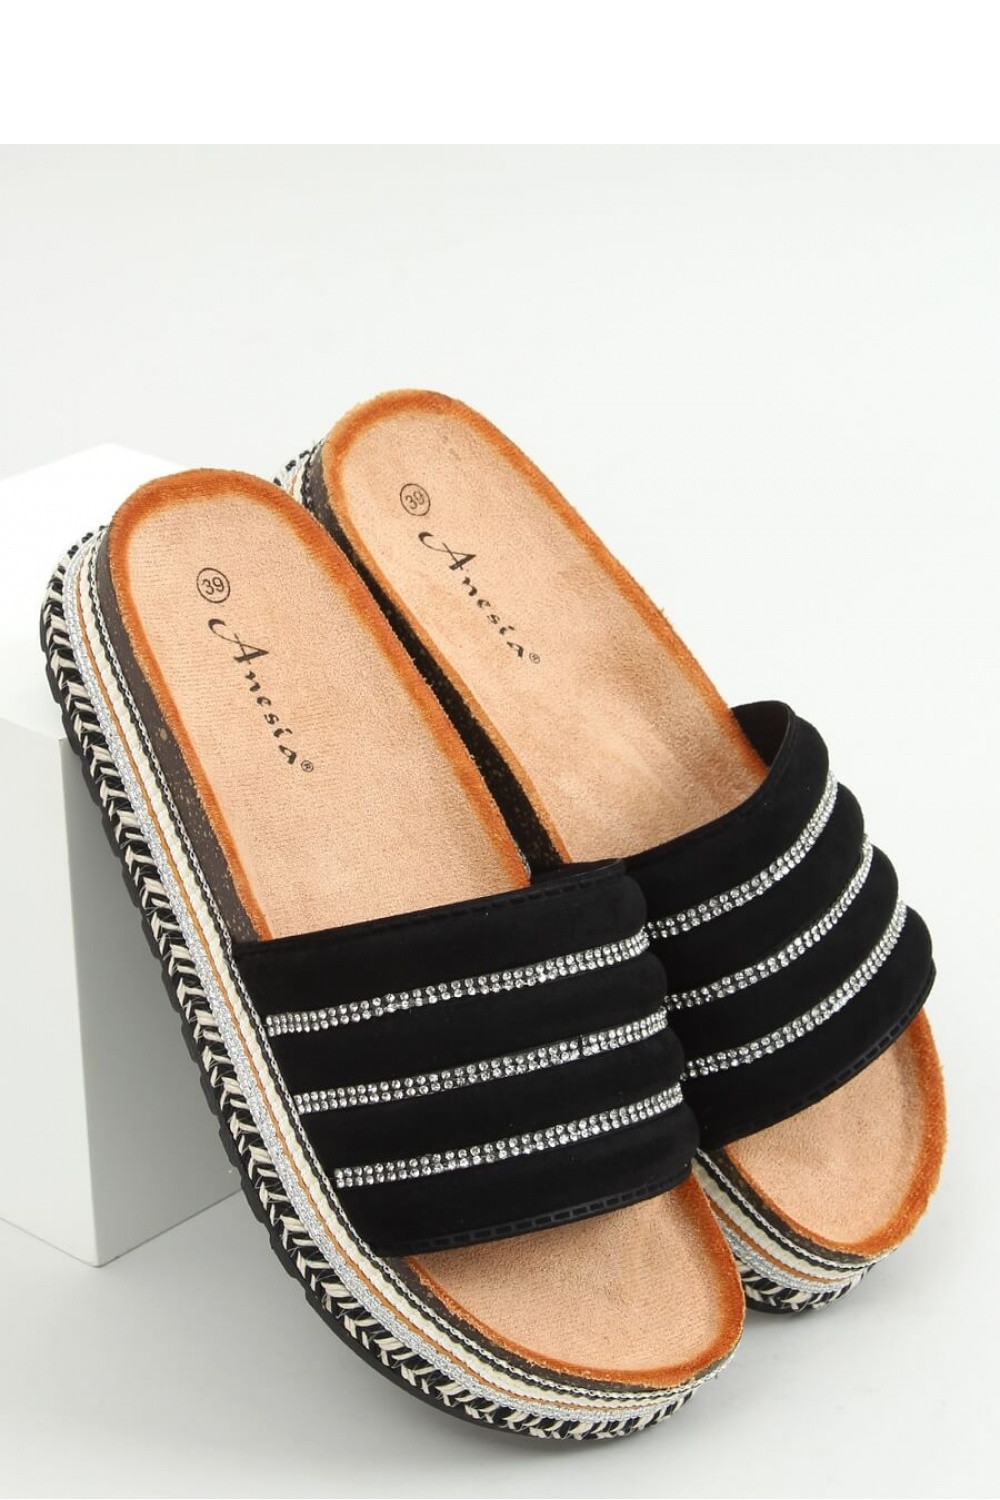 Dámské pantofle model 18717998 černé 36 černé stříbro 36 - Inello